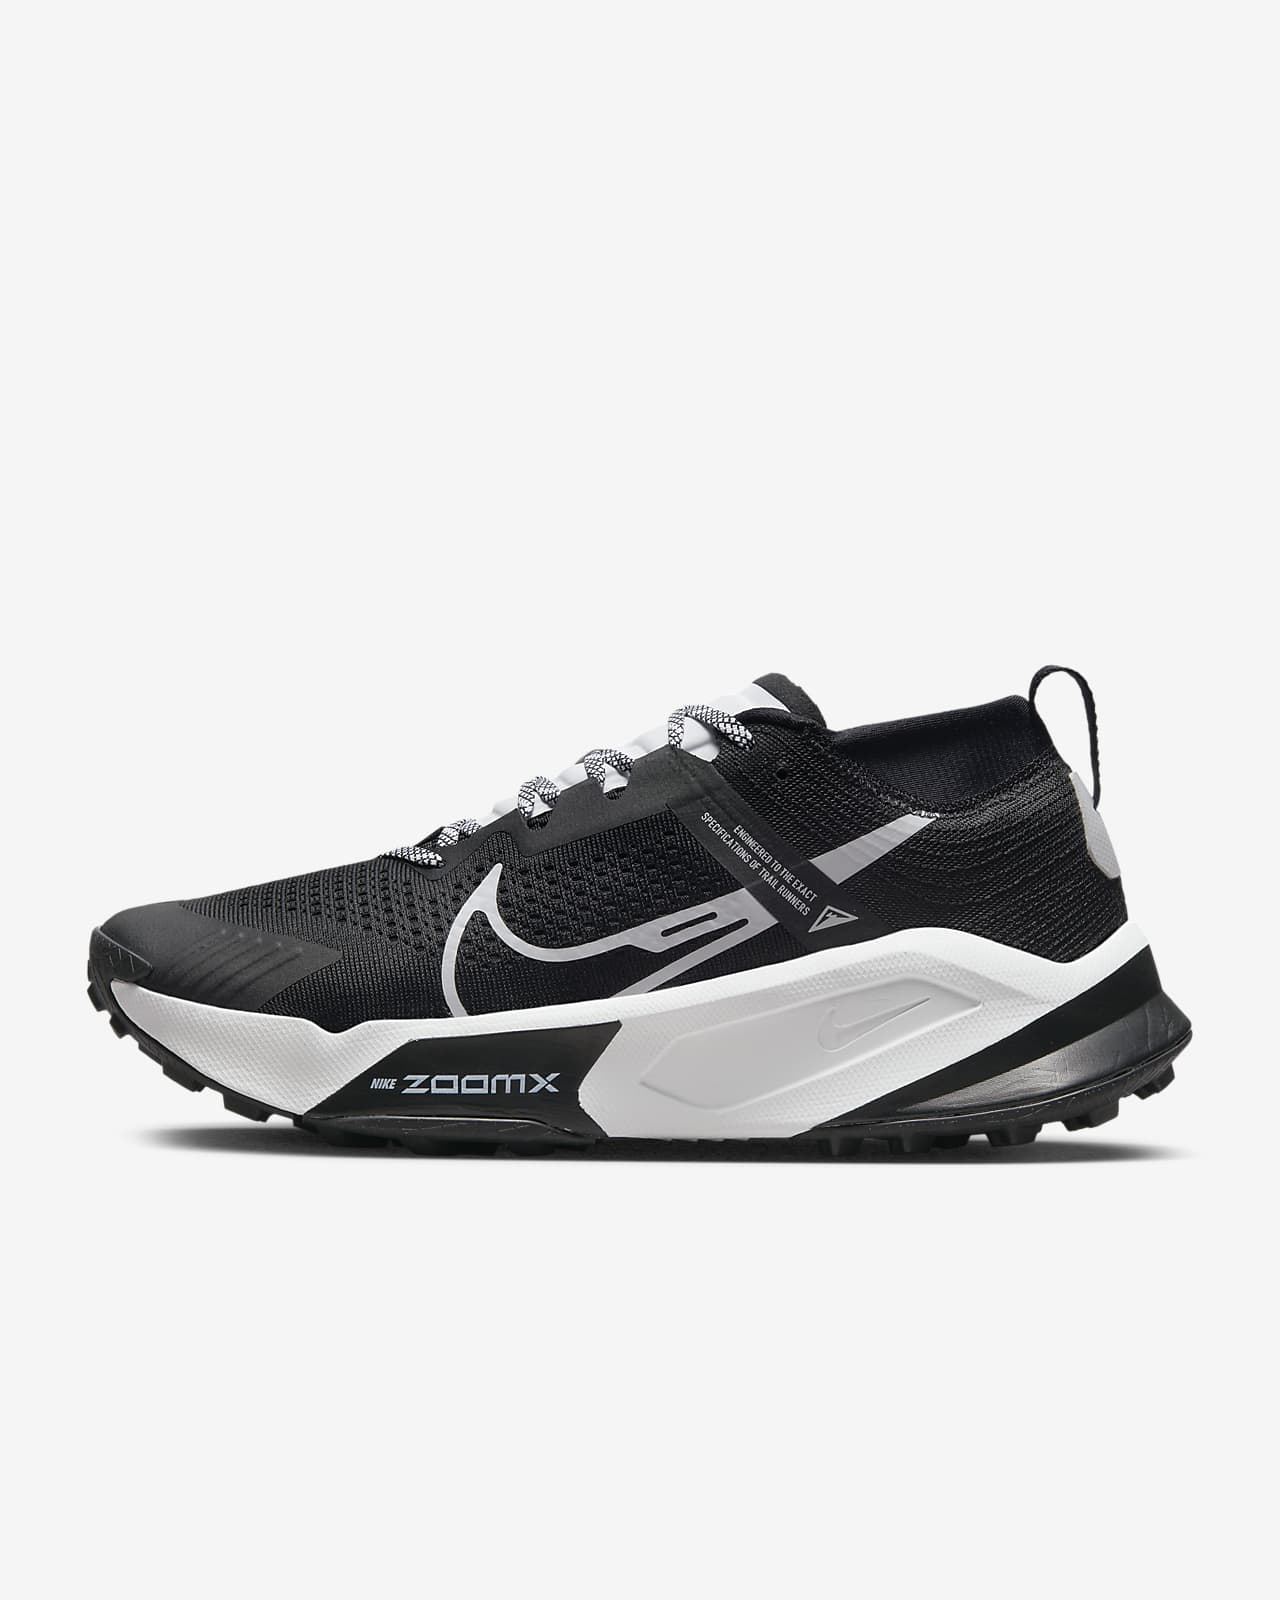 Ανδρικά παπούτσια για τρέξιμο σε ανώμαλο δρόμο Nike Zegama